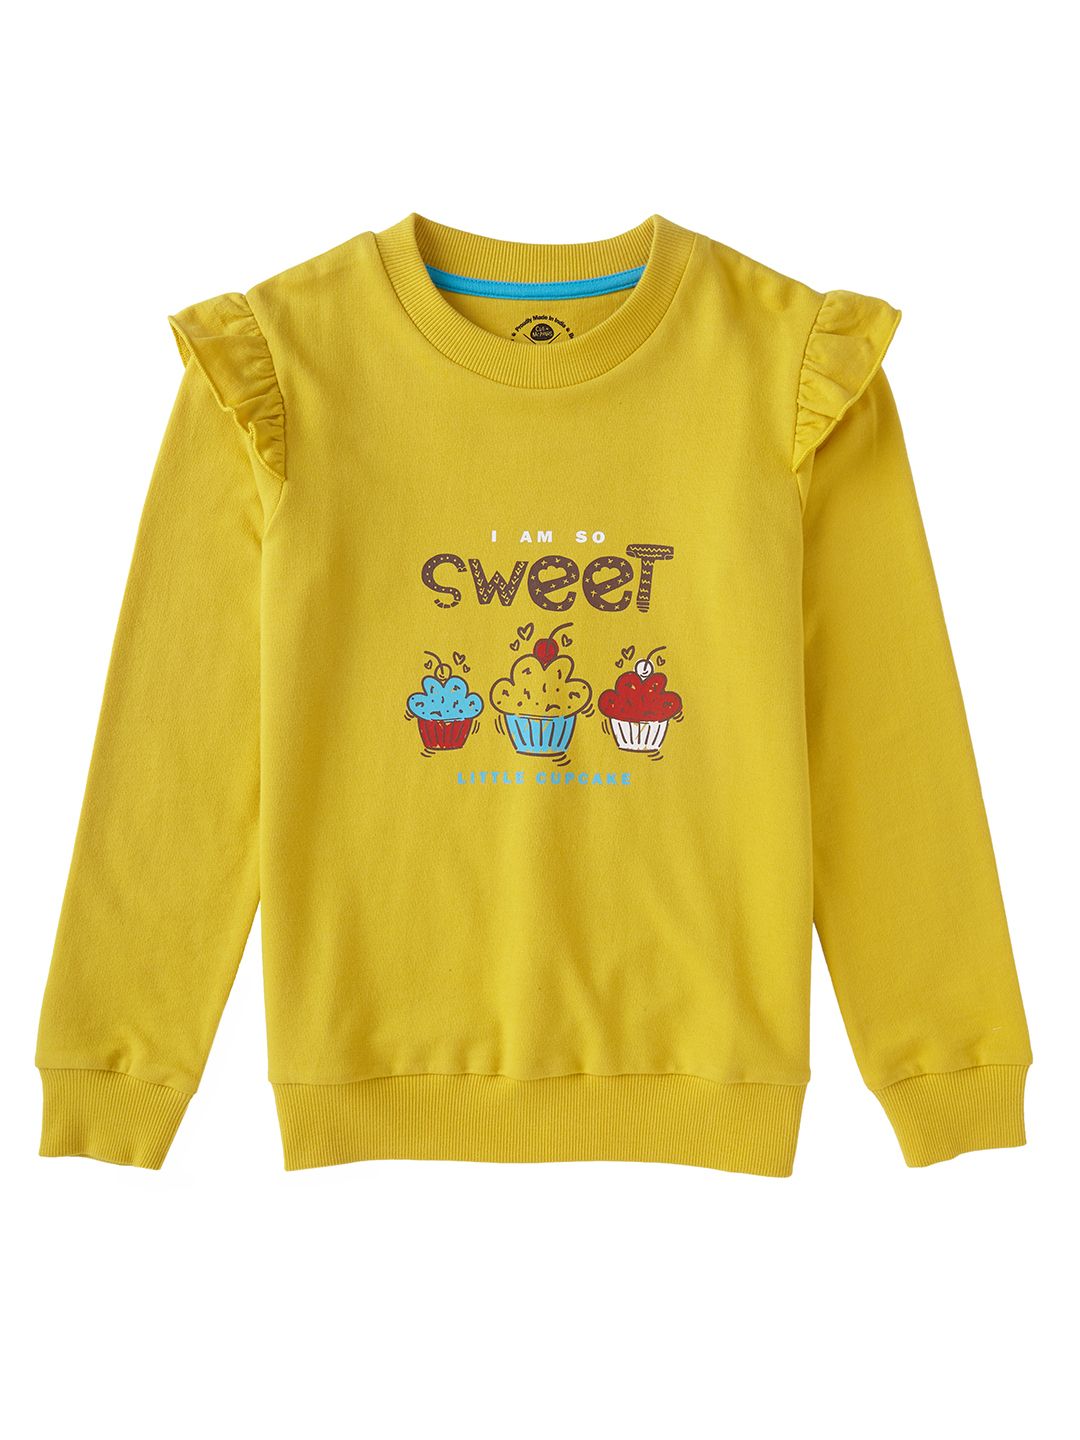 Girls Puff Sleeves Sweatshirt 4-12 Years (EOSS)